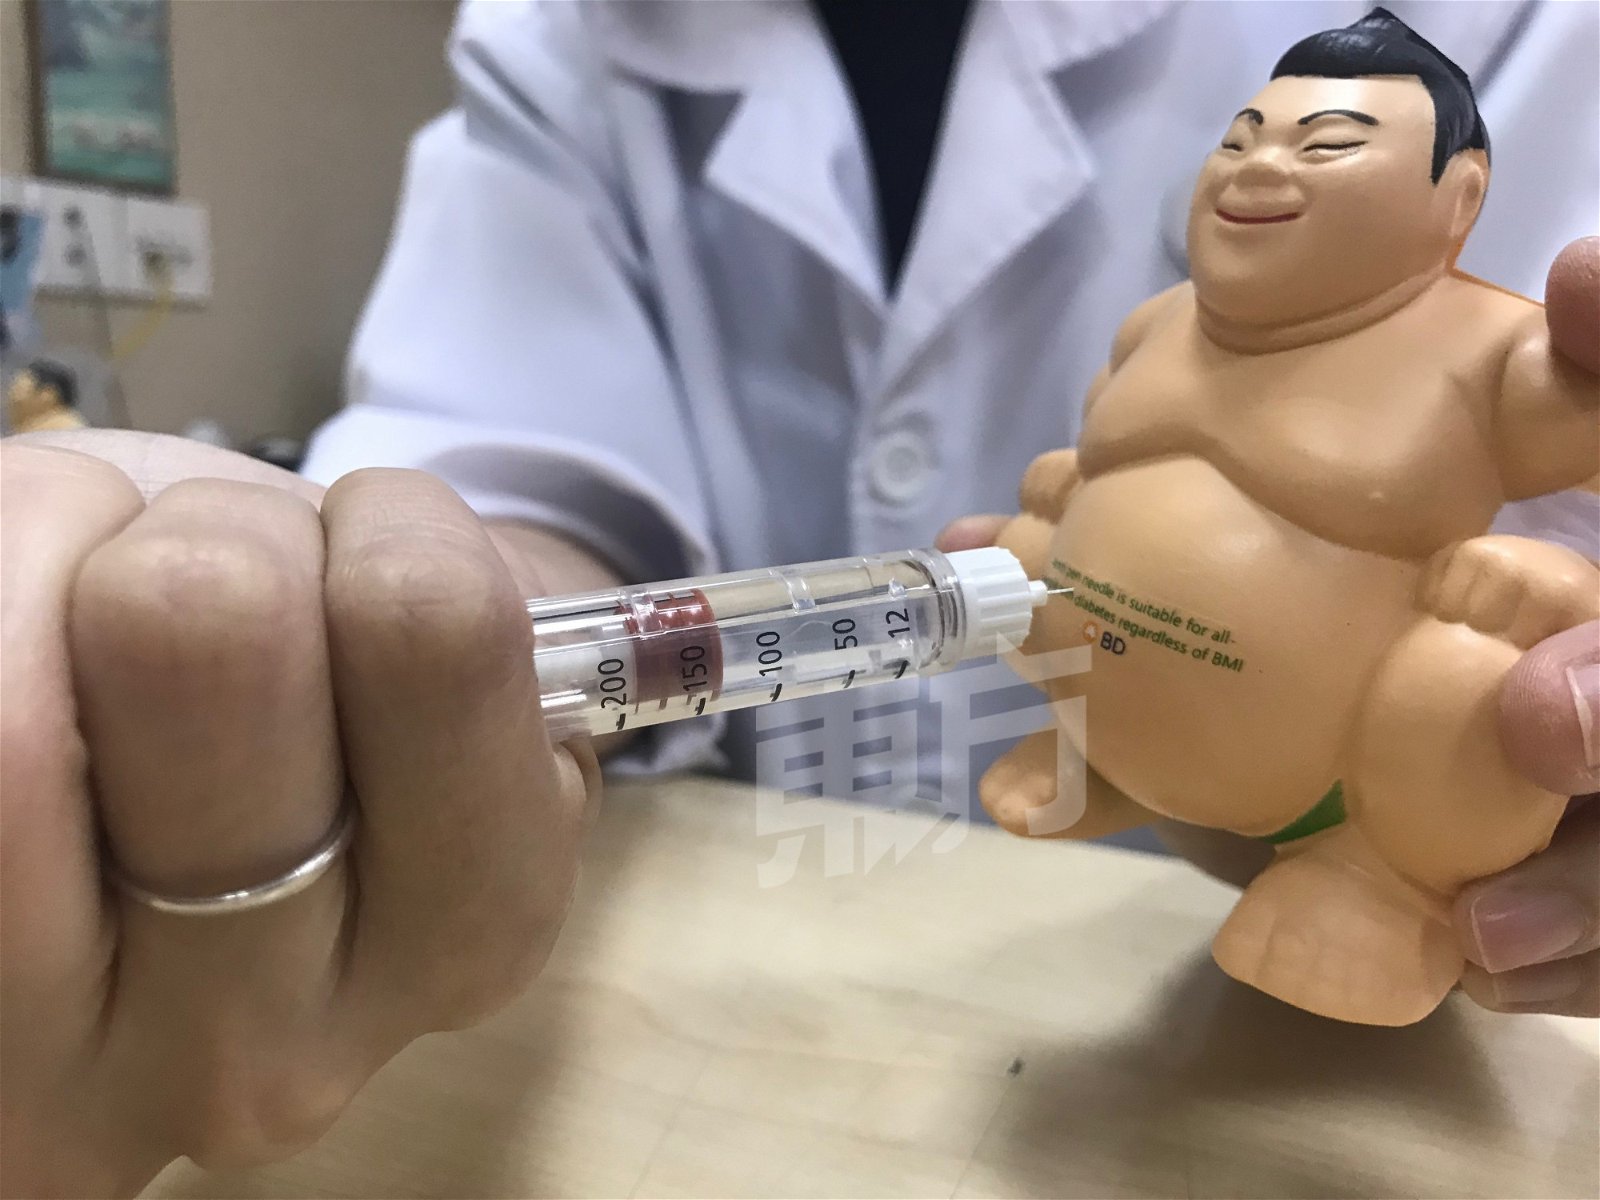 护理师用模型示范如何注射胰岛素。对准腹部再插入针，等待10至15秒再拔出。